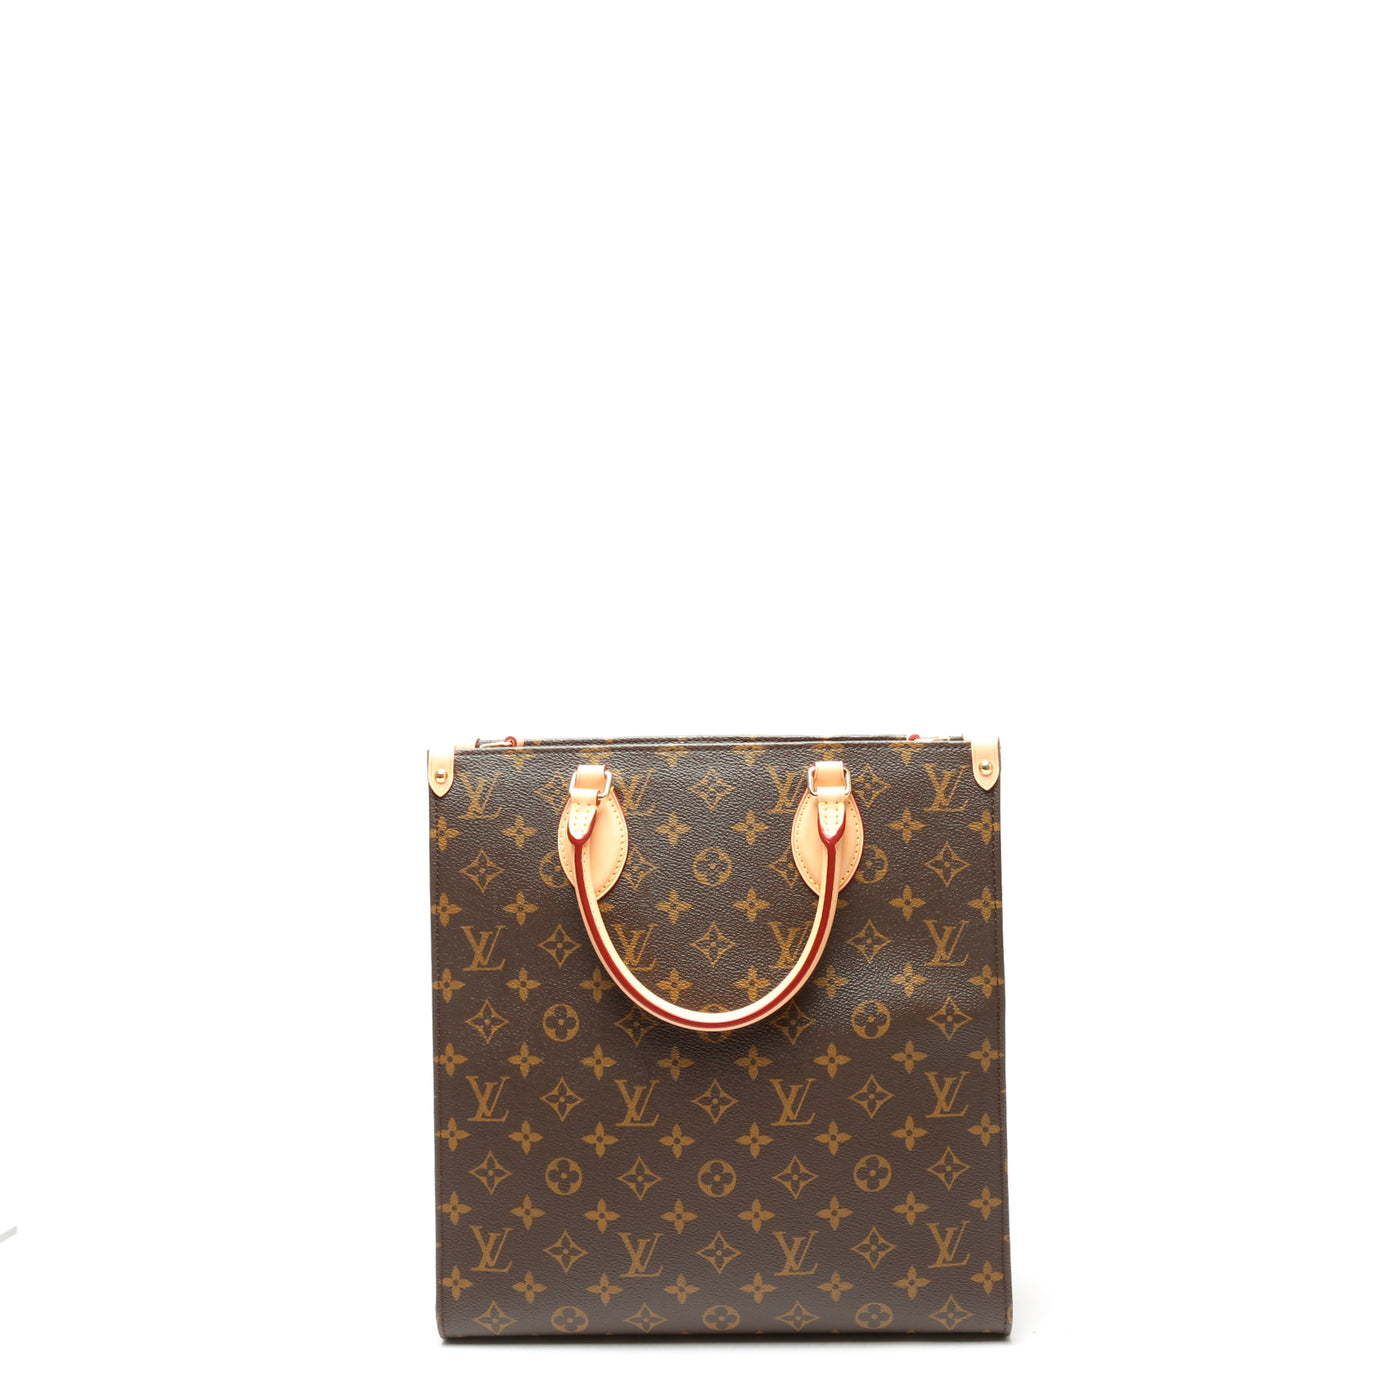 Louis Vuitton Monogram Sac Plat PM - Brown Totes, Handbags